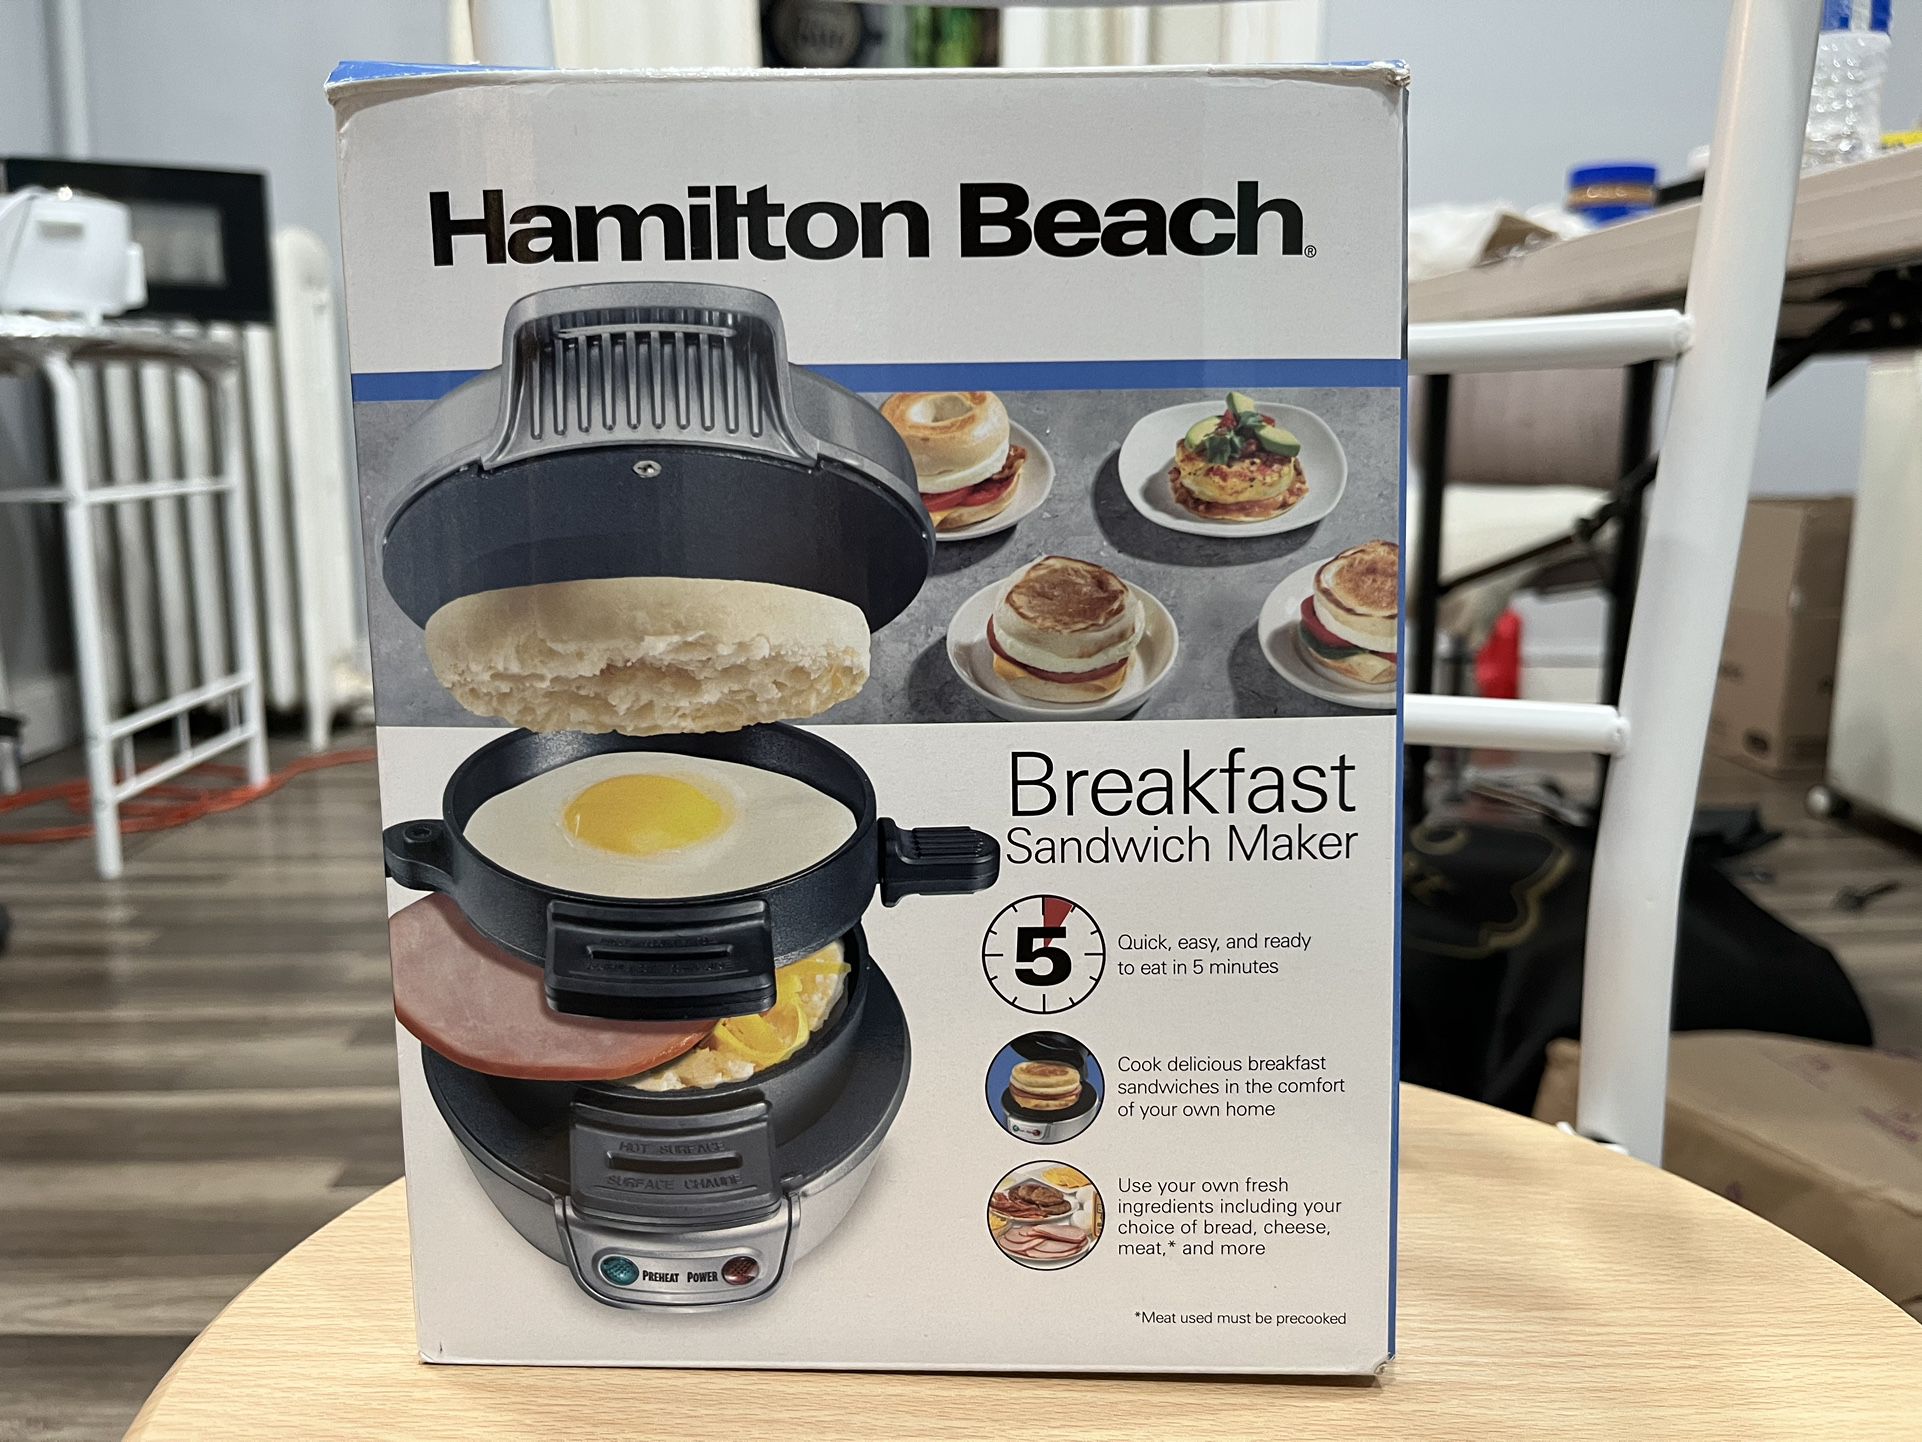 Hamilton Beach Breakfast sandwich maker 